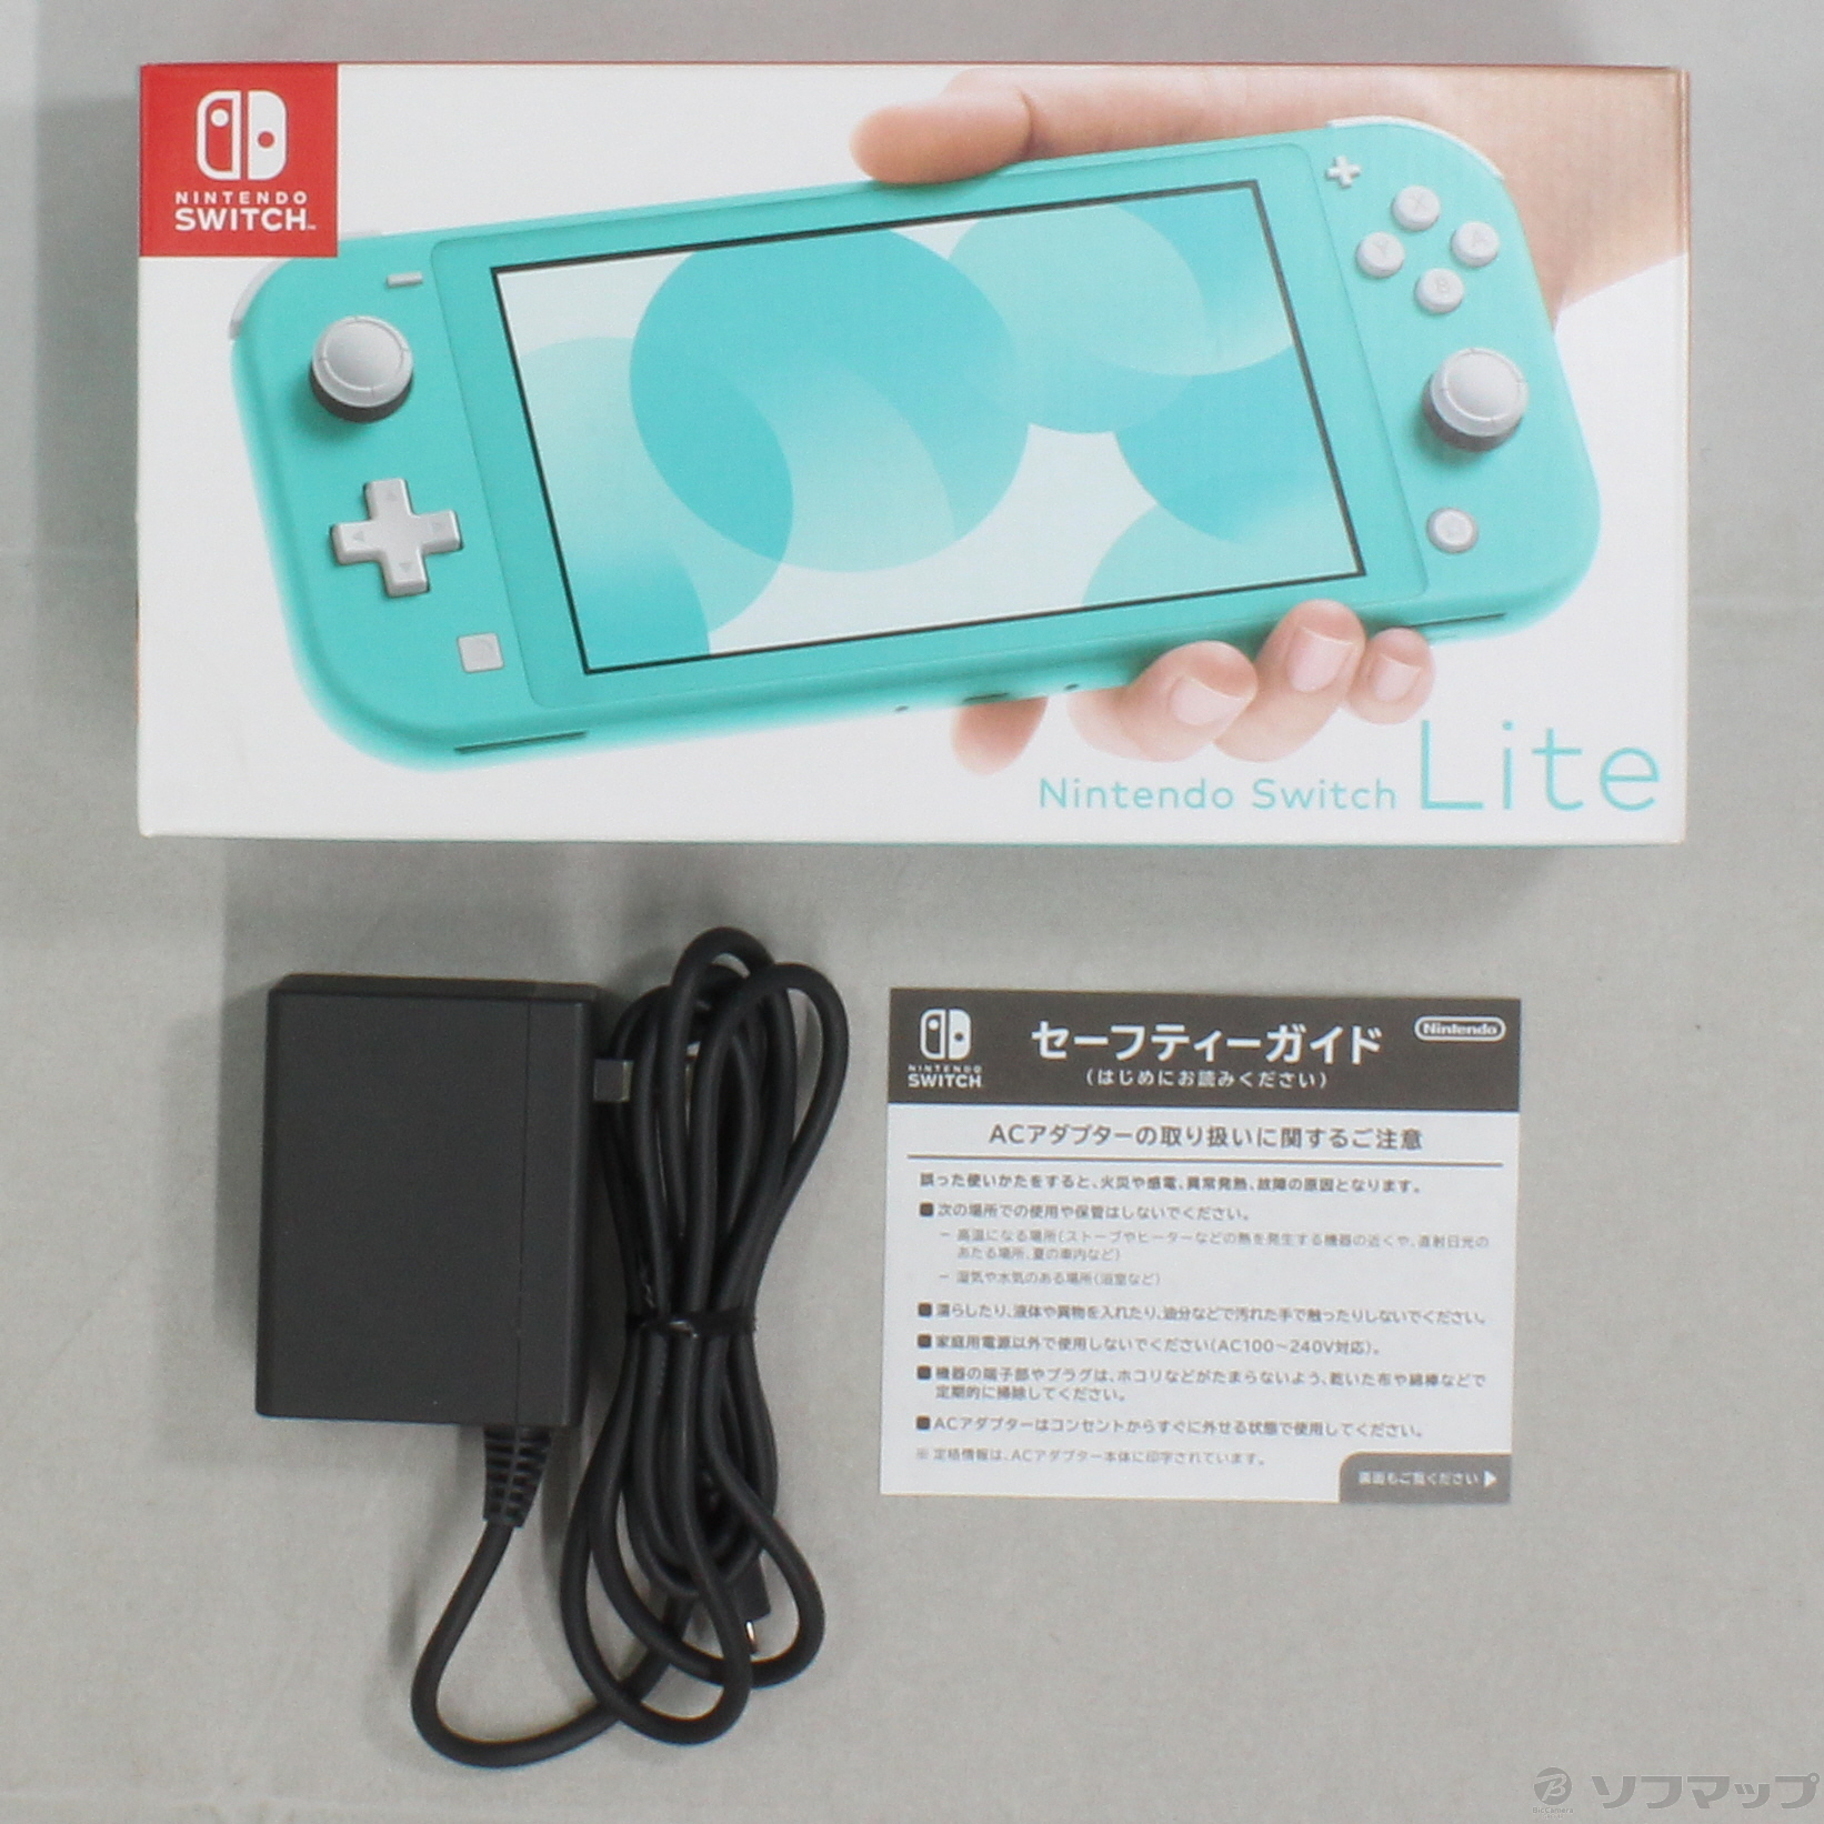 セール対象品 Nintendo Switch Lite ターコイズ ◇11/14(日)値下げ！